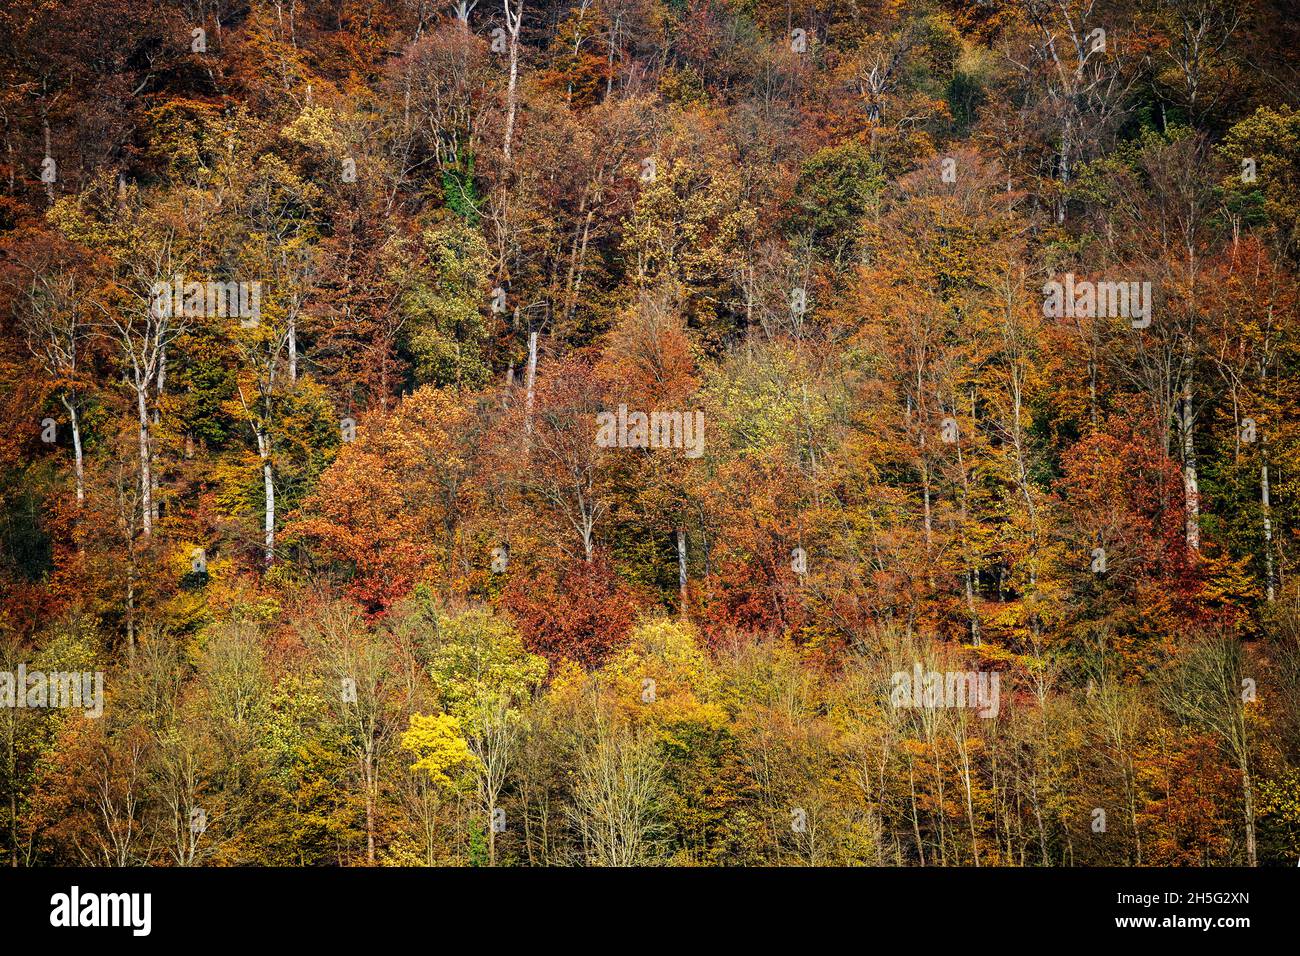 Forêt automnale avec feuillage coloré, Essen, région de Ruhr, Allemagne Banque D'Images